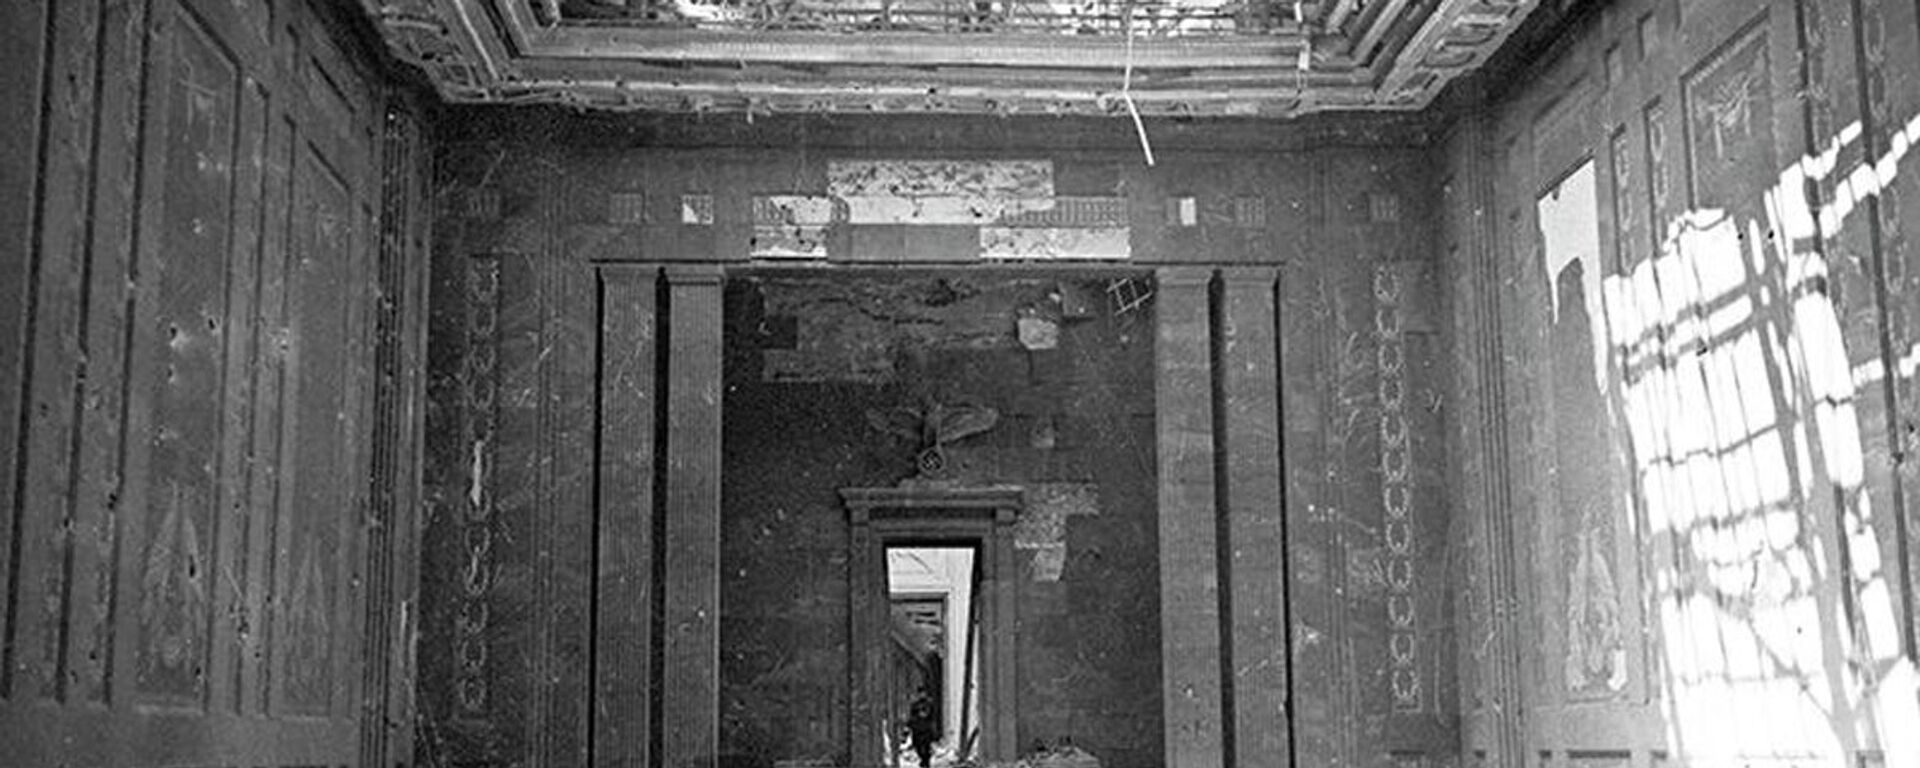 Улаз у надземни део Фиреровог бункера из правца дворишта Царске канцеларије - Sputnik Србија, 1920, 06.11.2020